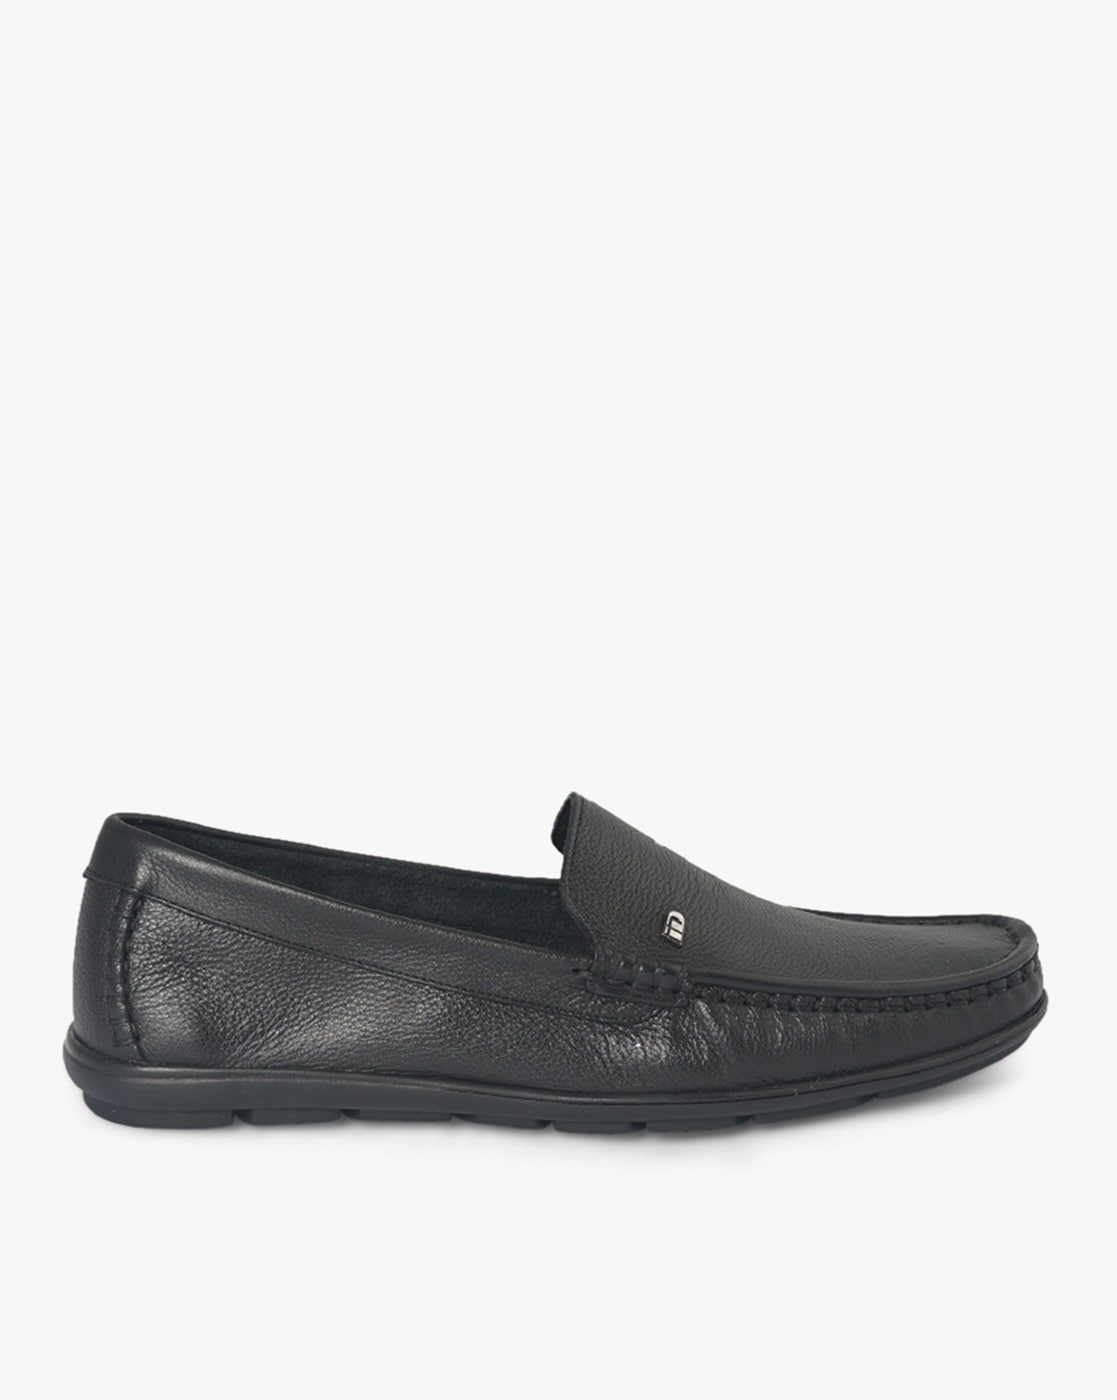 Men Black Formal Shoes - Buy Men Black Formal Shoes online in India